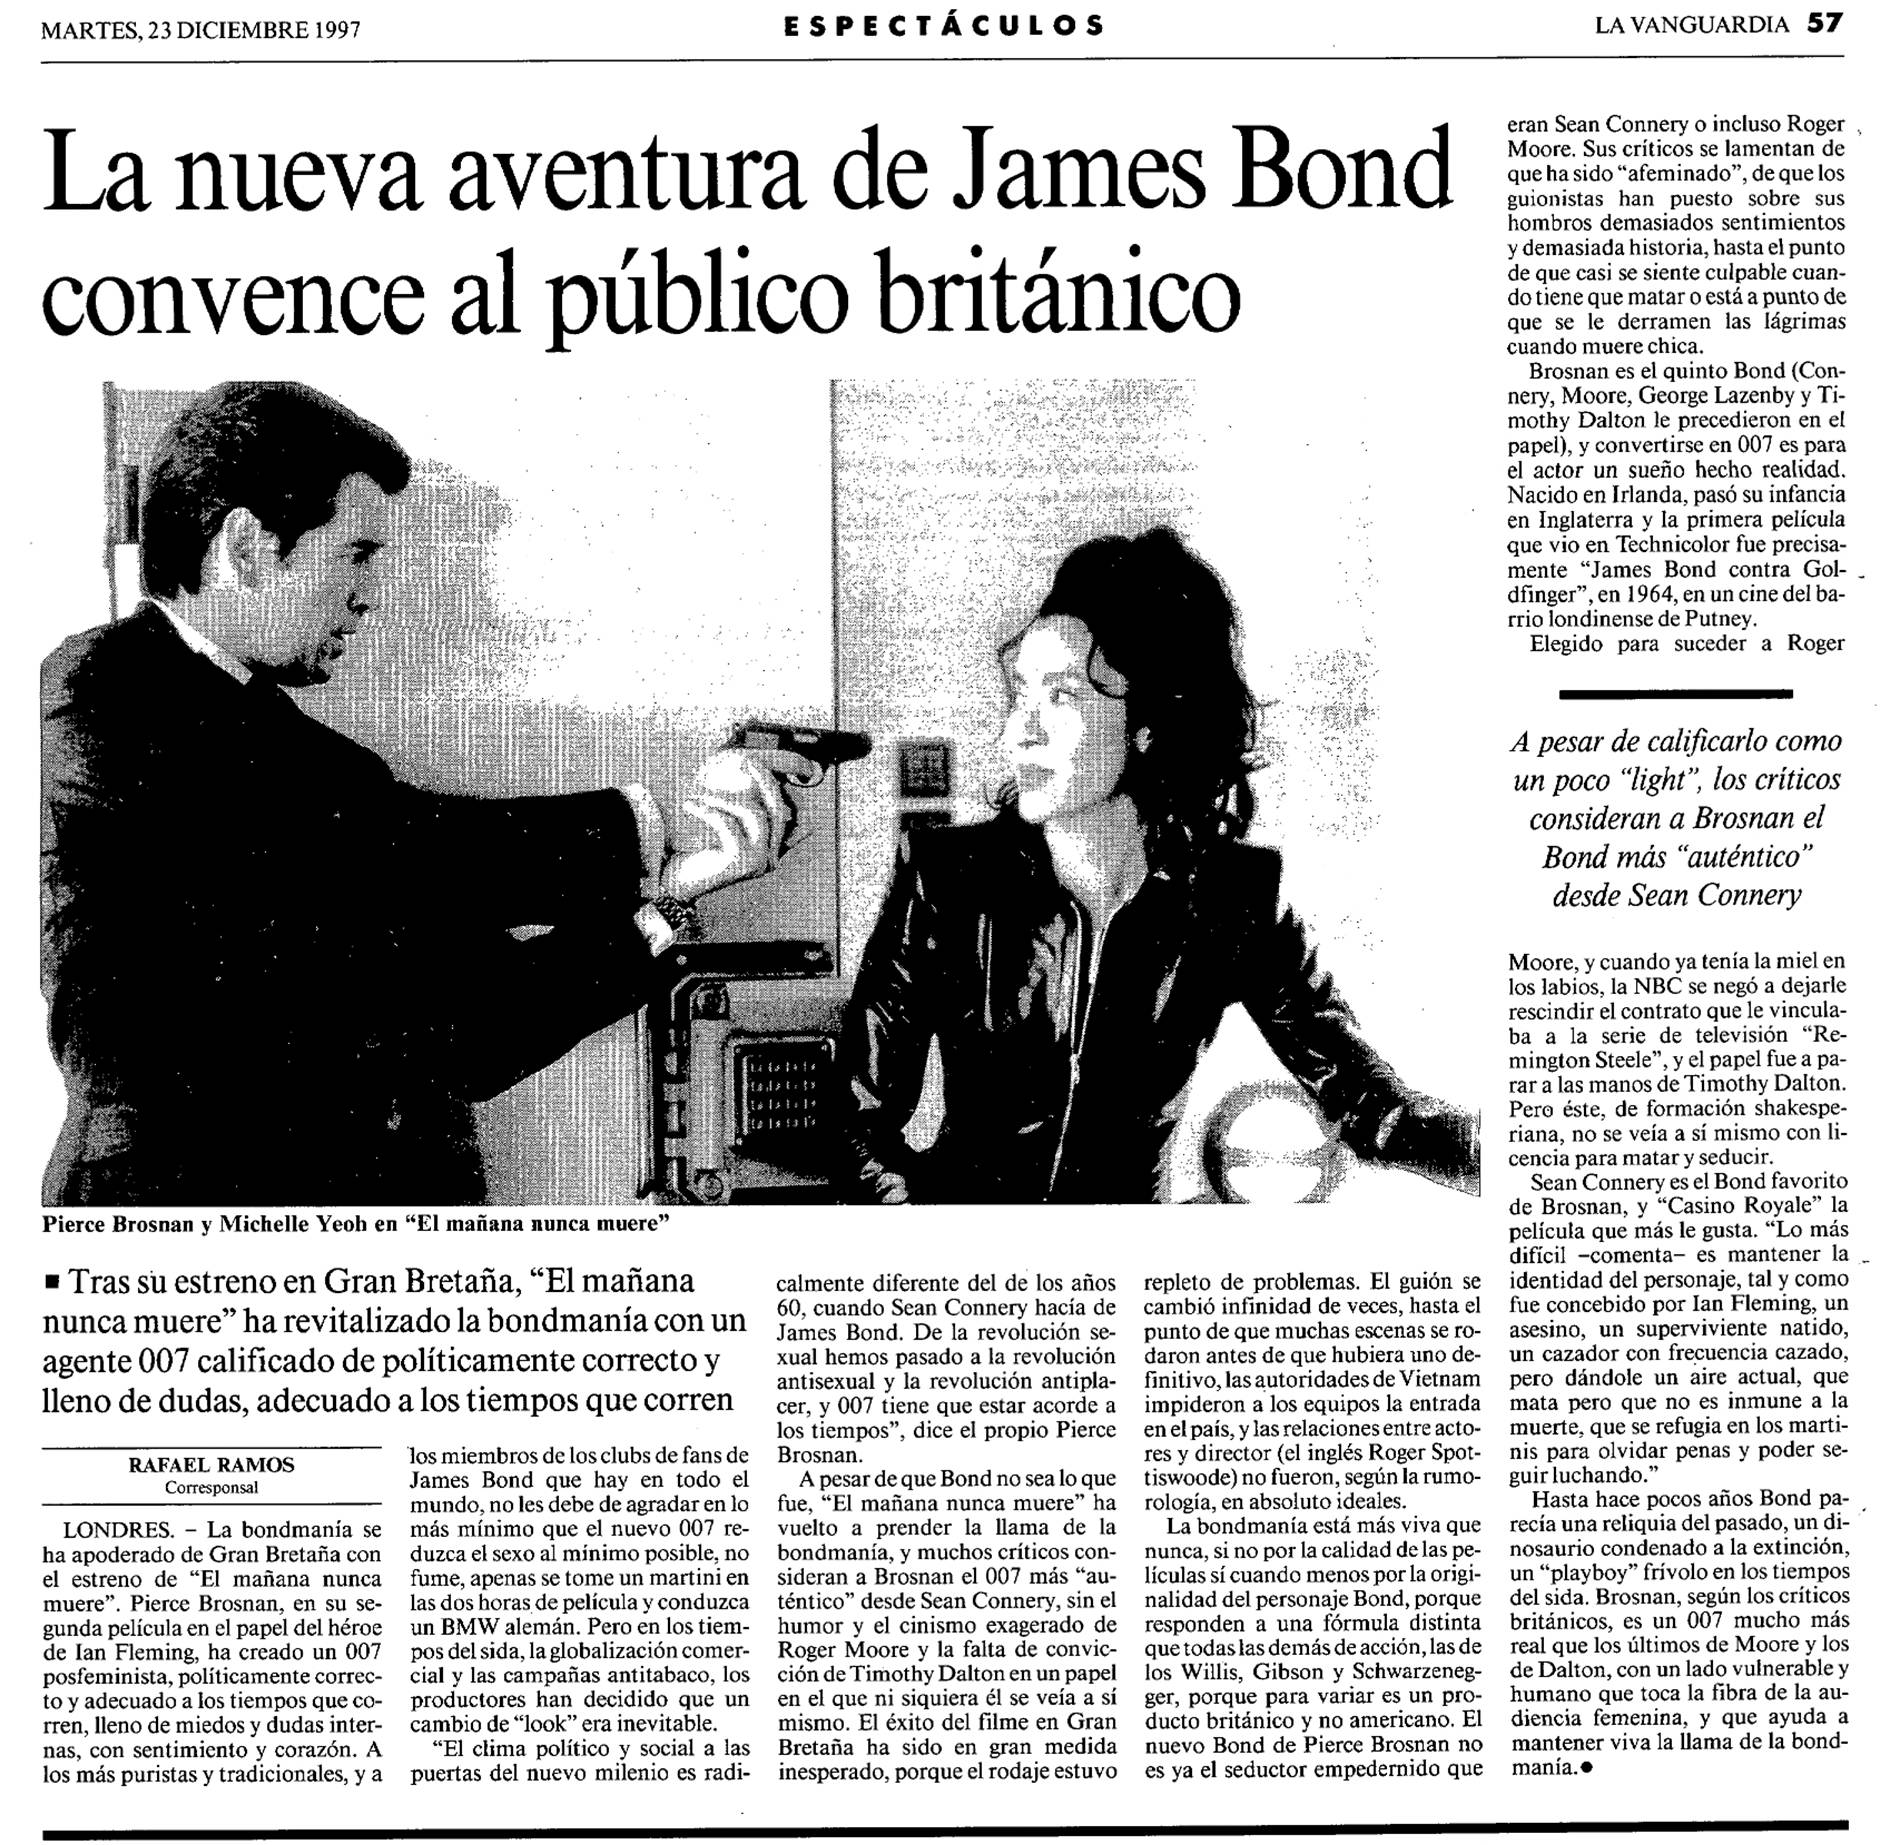 18 1997 12 23 La Vanguardia Barcelona 057